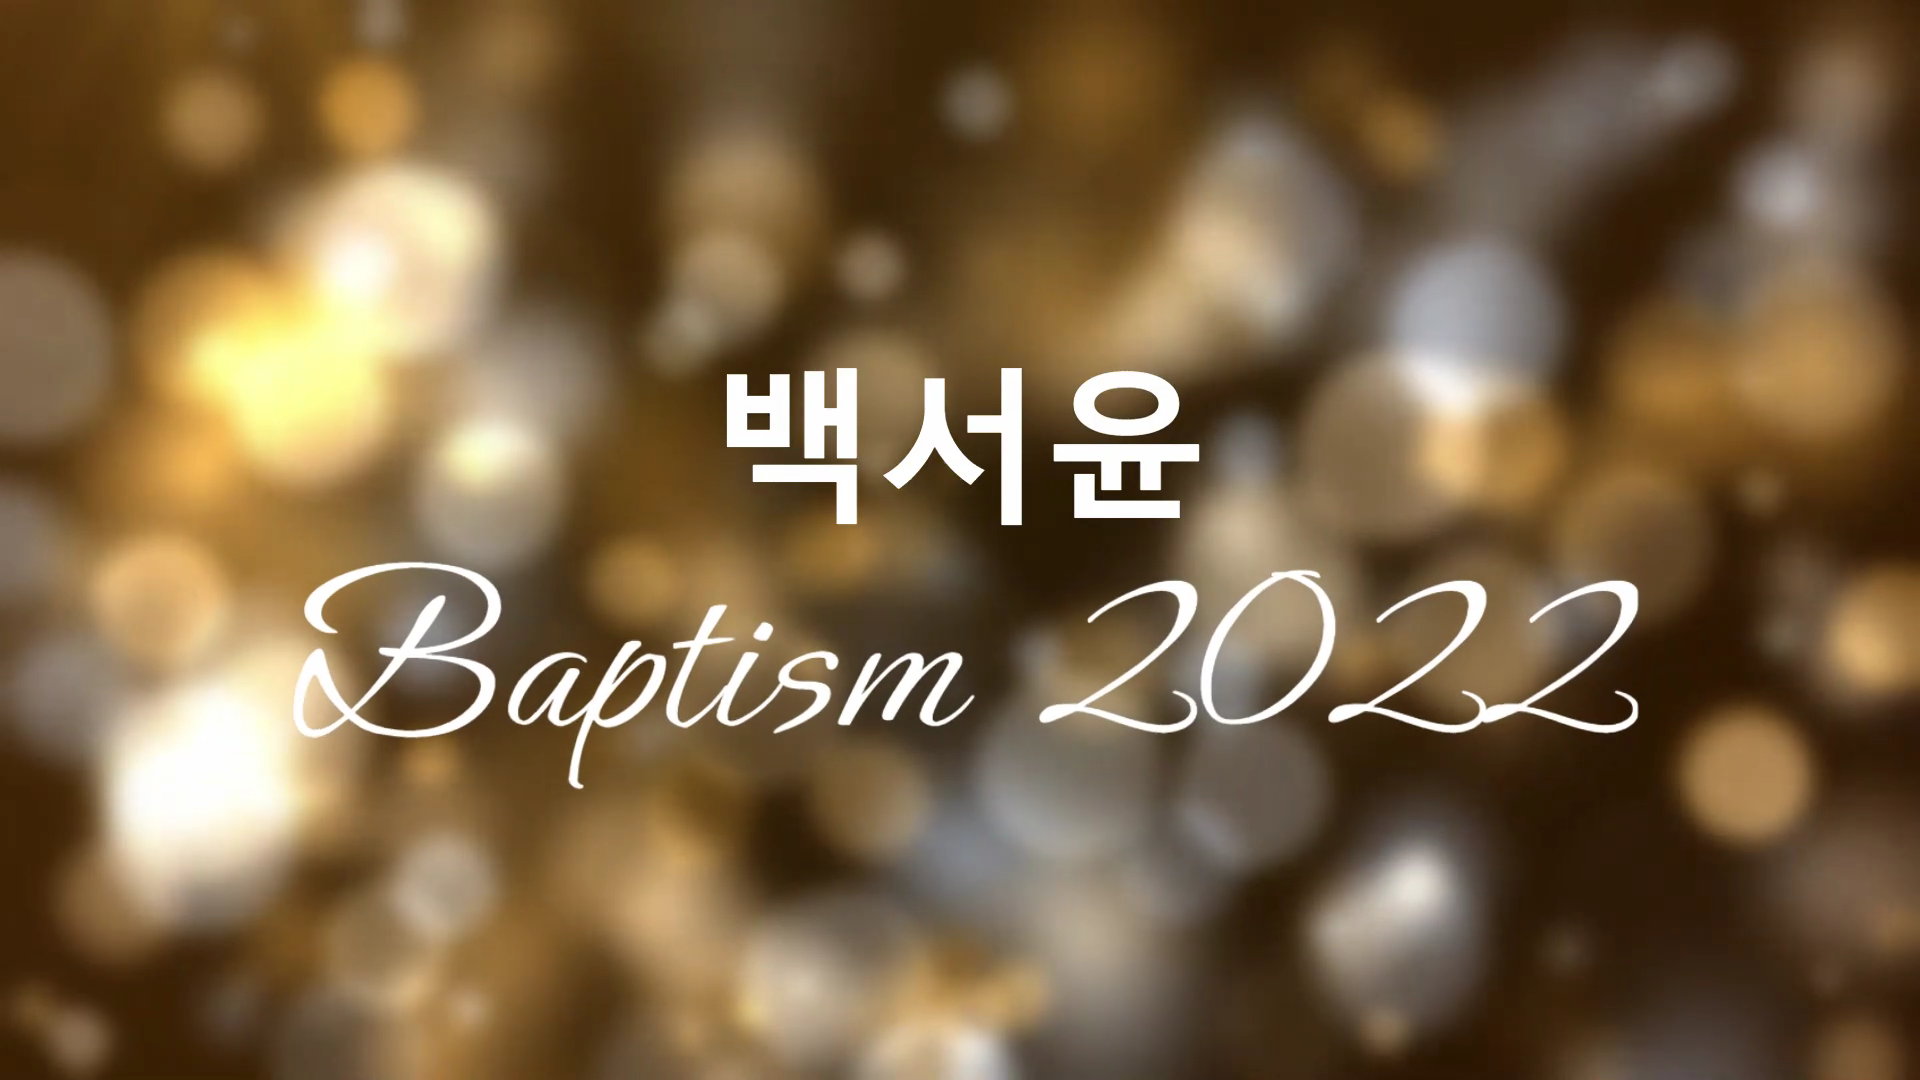 2002 Baptism(BaekSeoYoon) (1).mp4_000003466.png